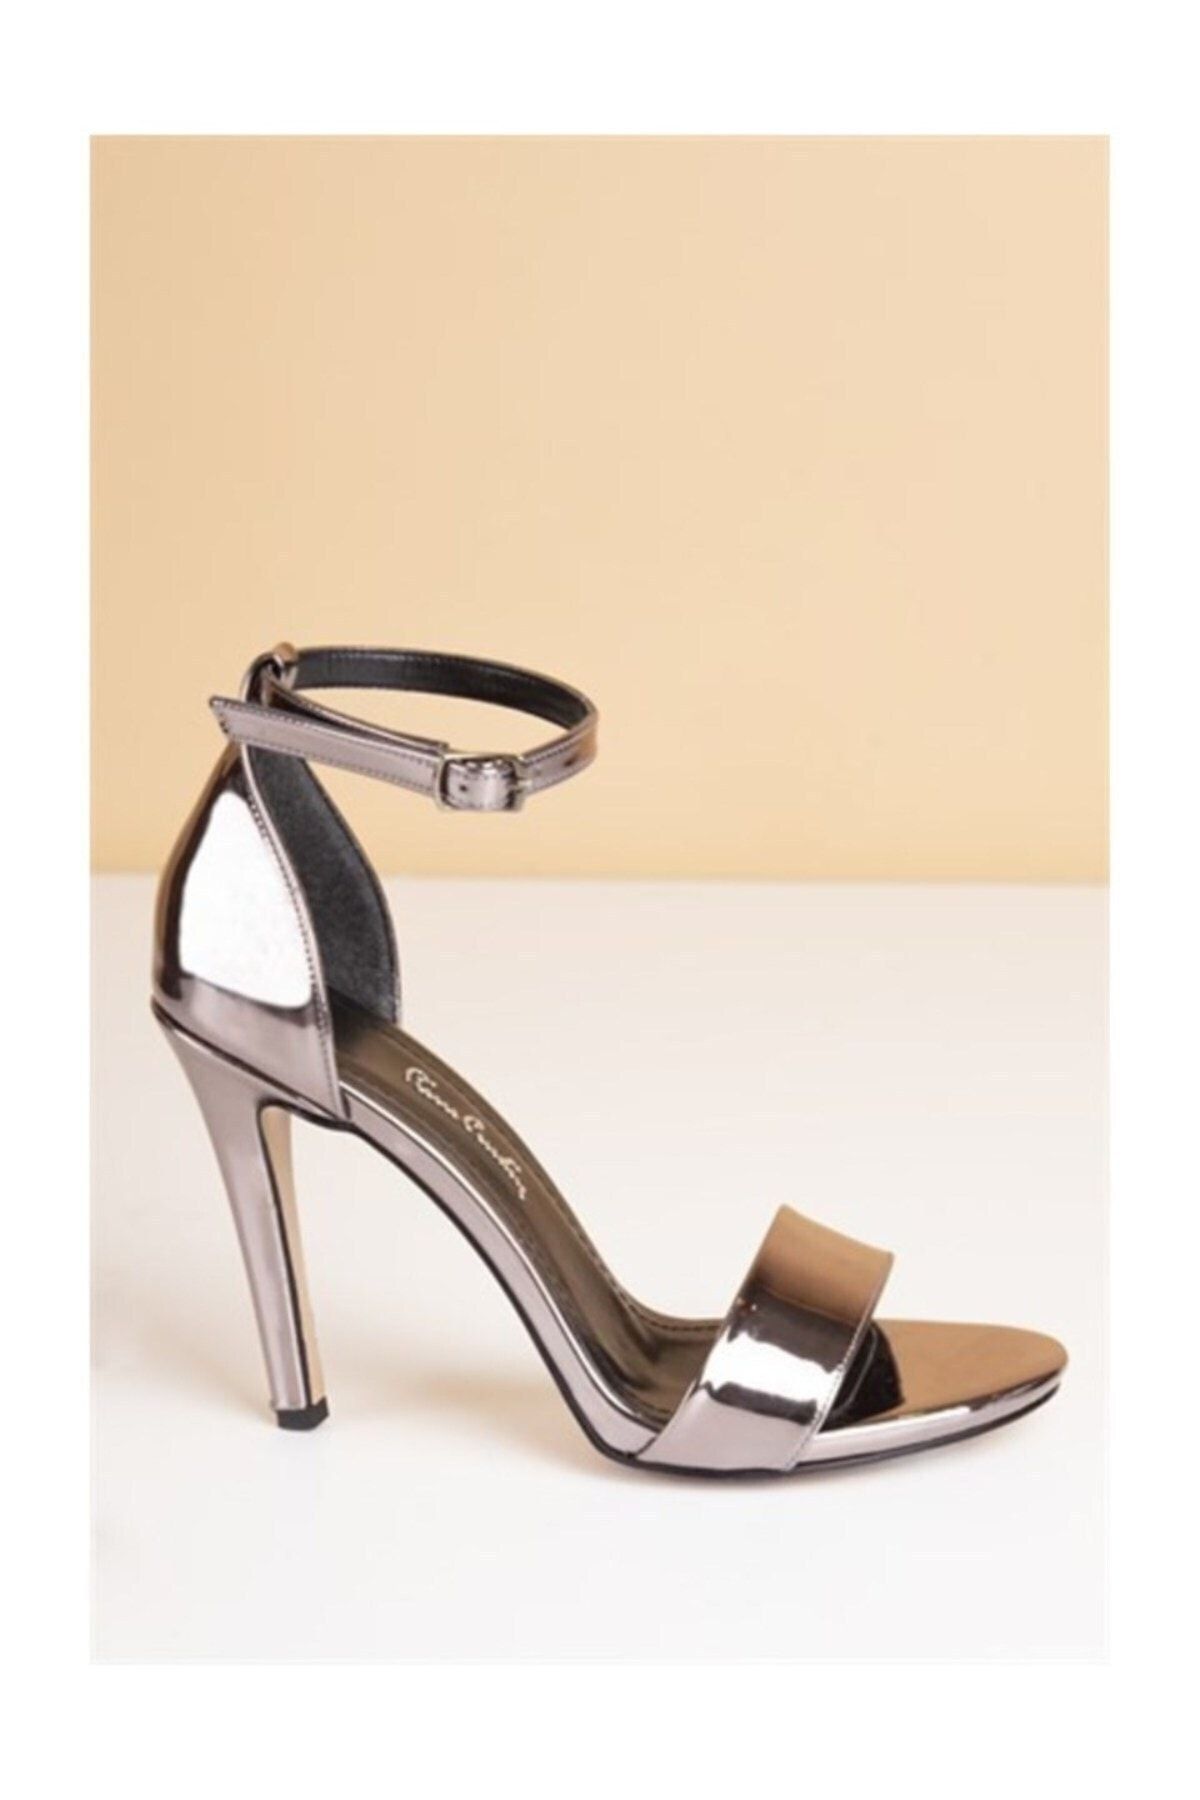 Pierre Cardin Kadın Topuklu Ayakkabı- Platin (Pc-50170)